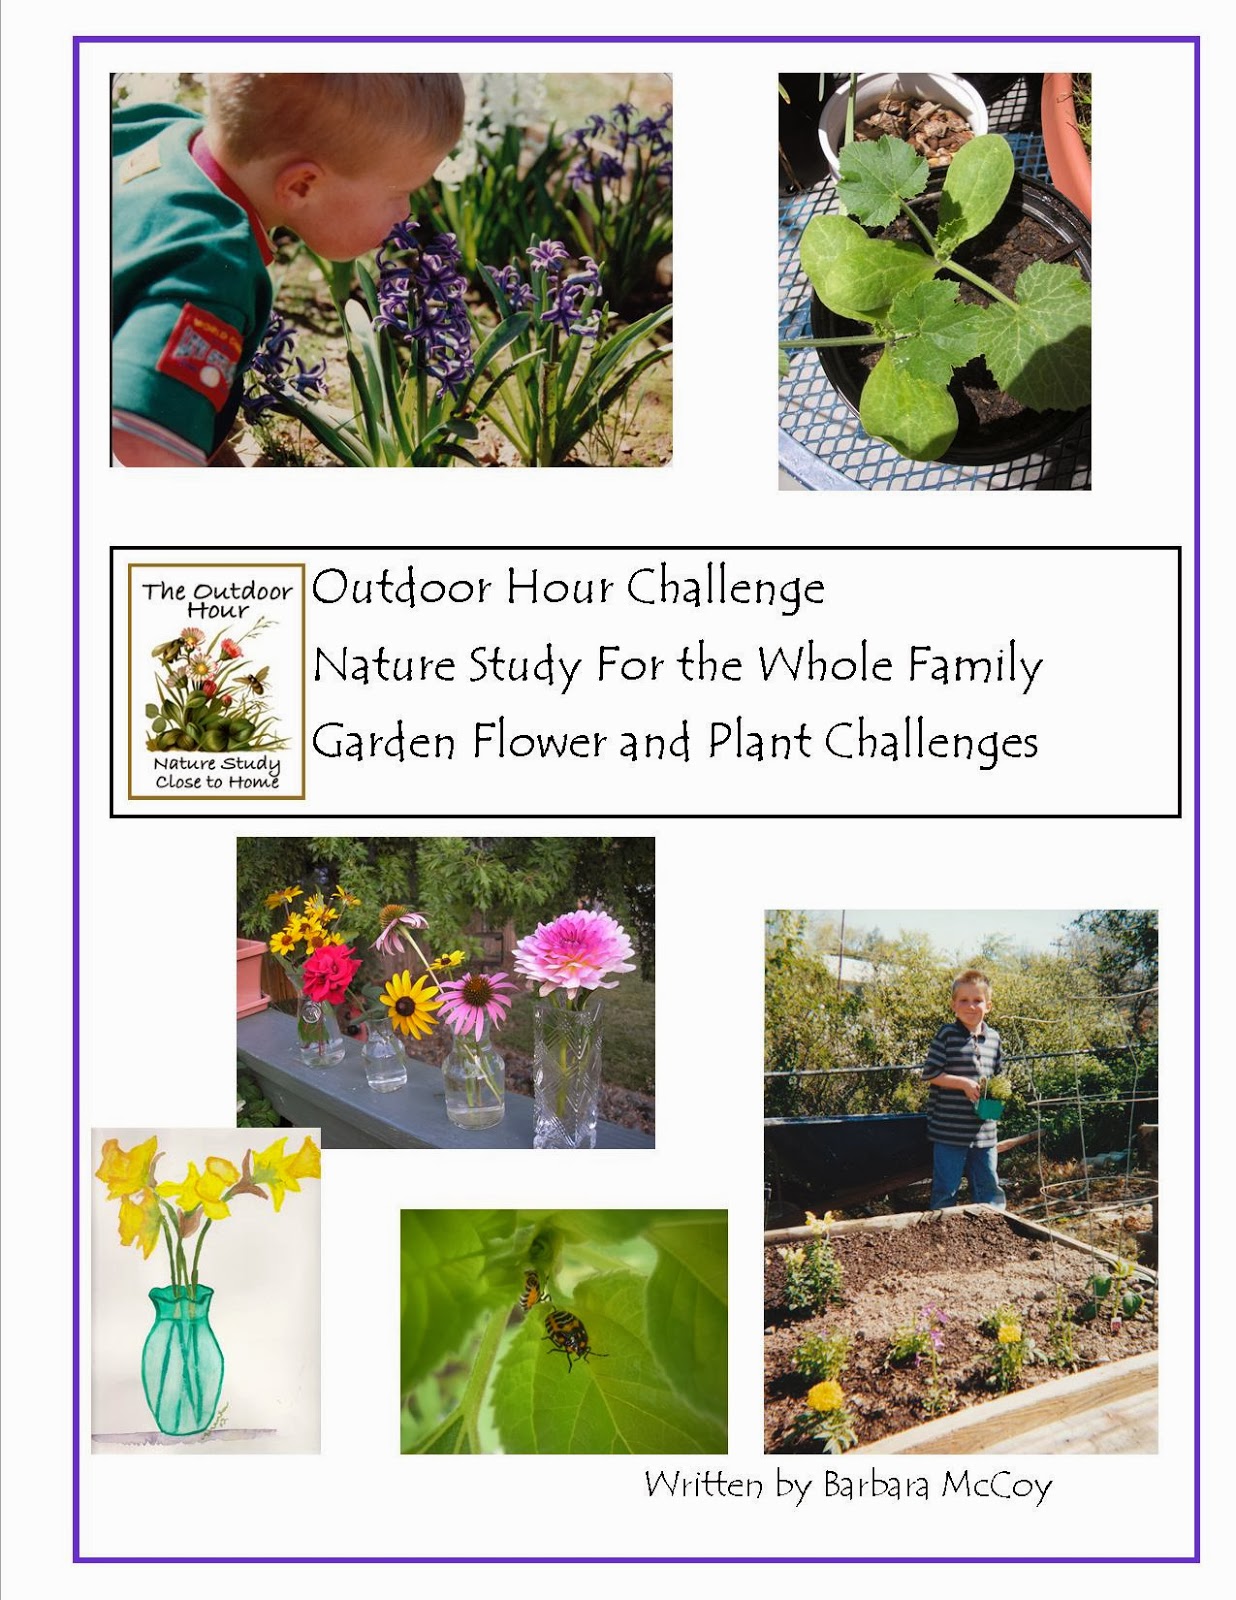 https://naturestudyhomeschool.com/2009/07/new-outdoor-hour-challenge-ebook-garden_27.html